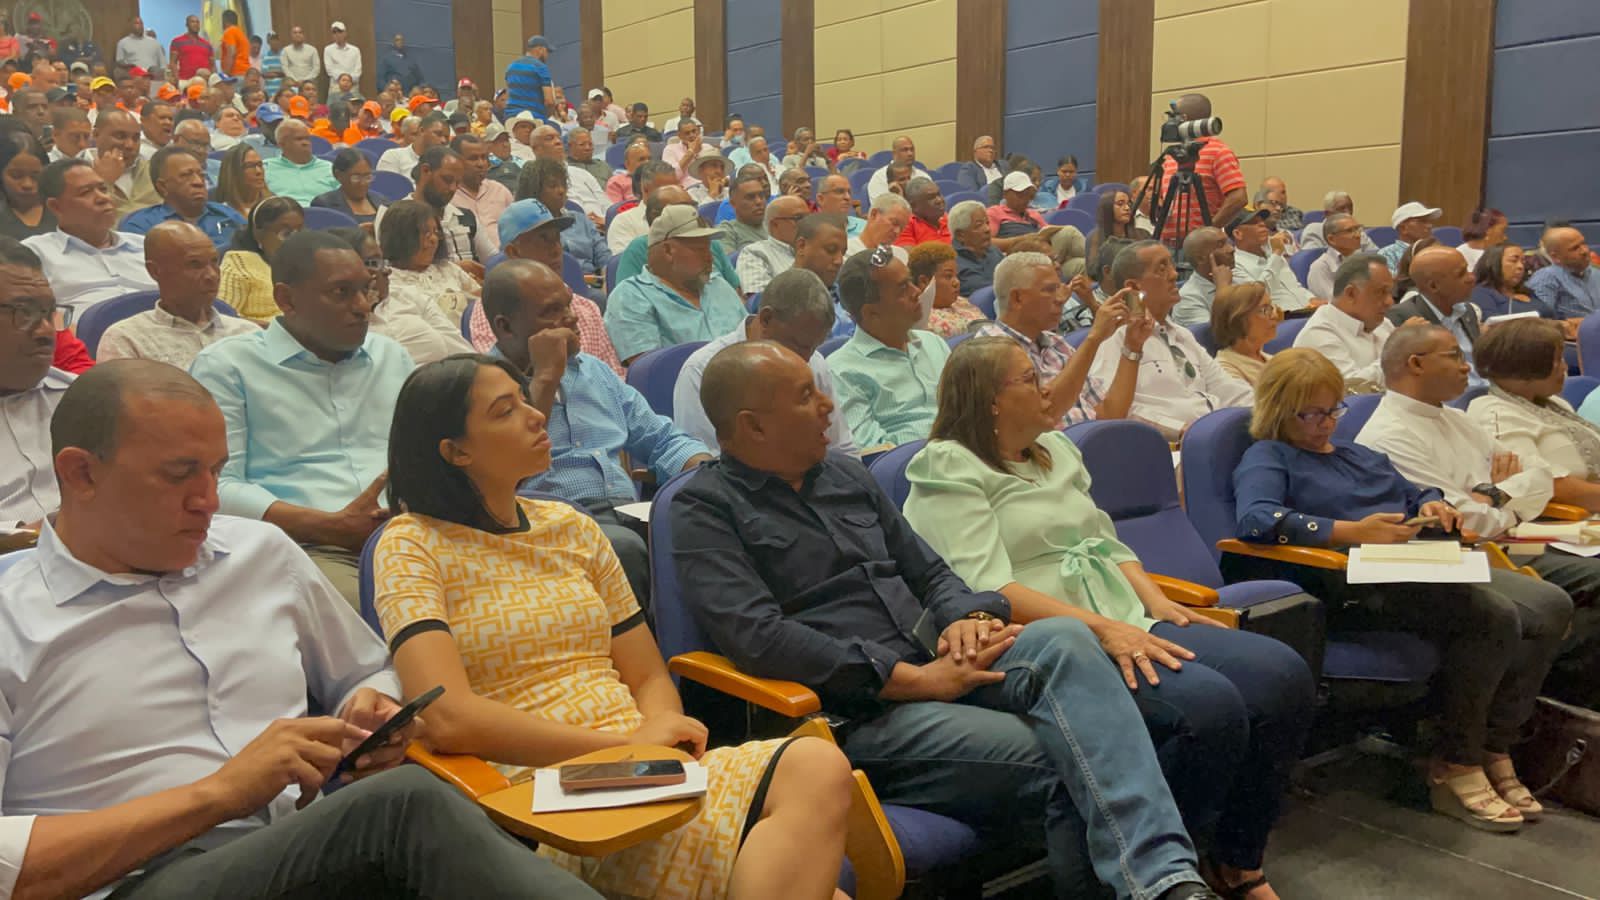 Fuerzas vivas de San Juan definen sus prioridades ante delegación del Gobierno